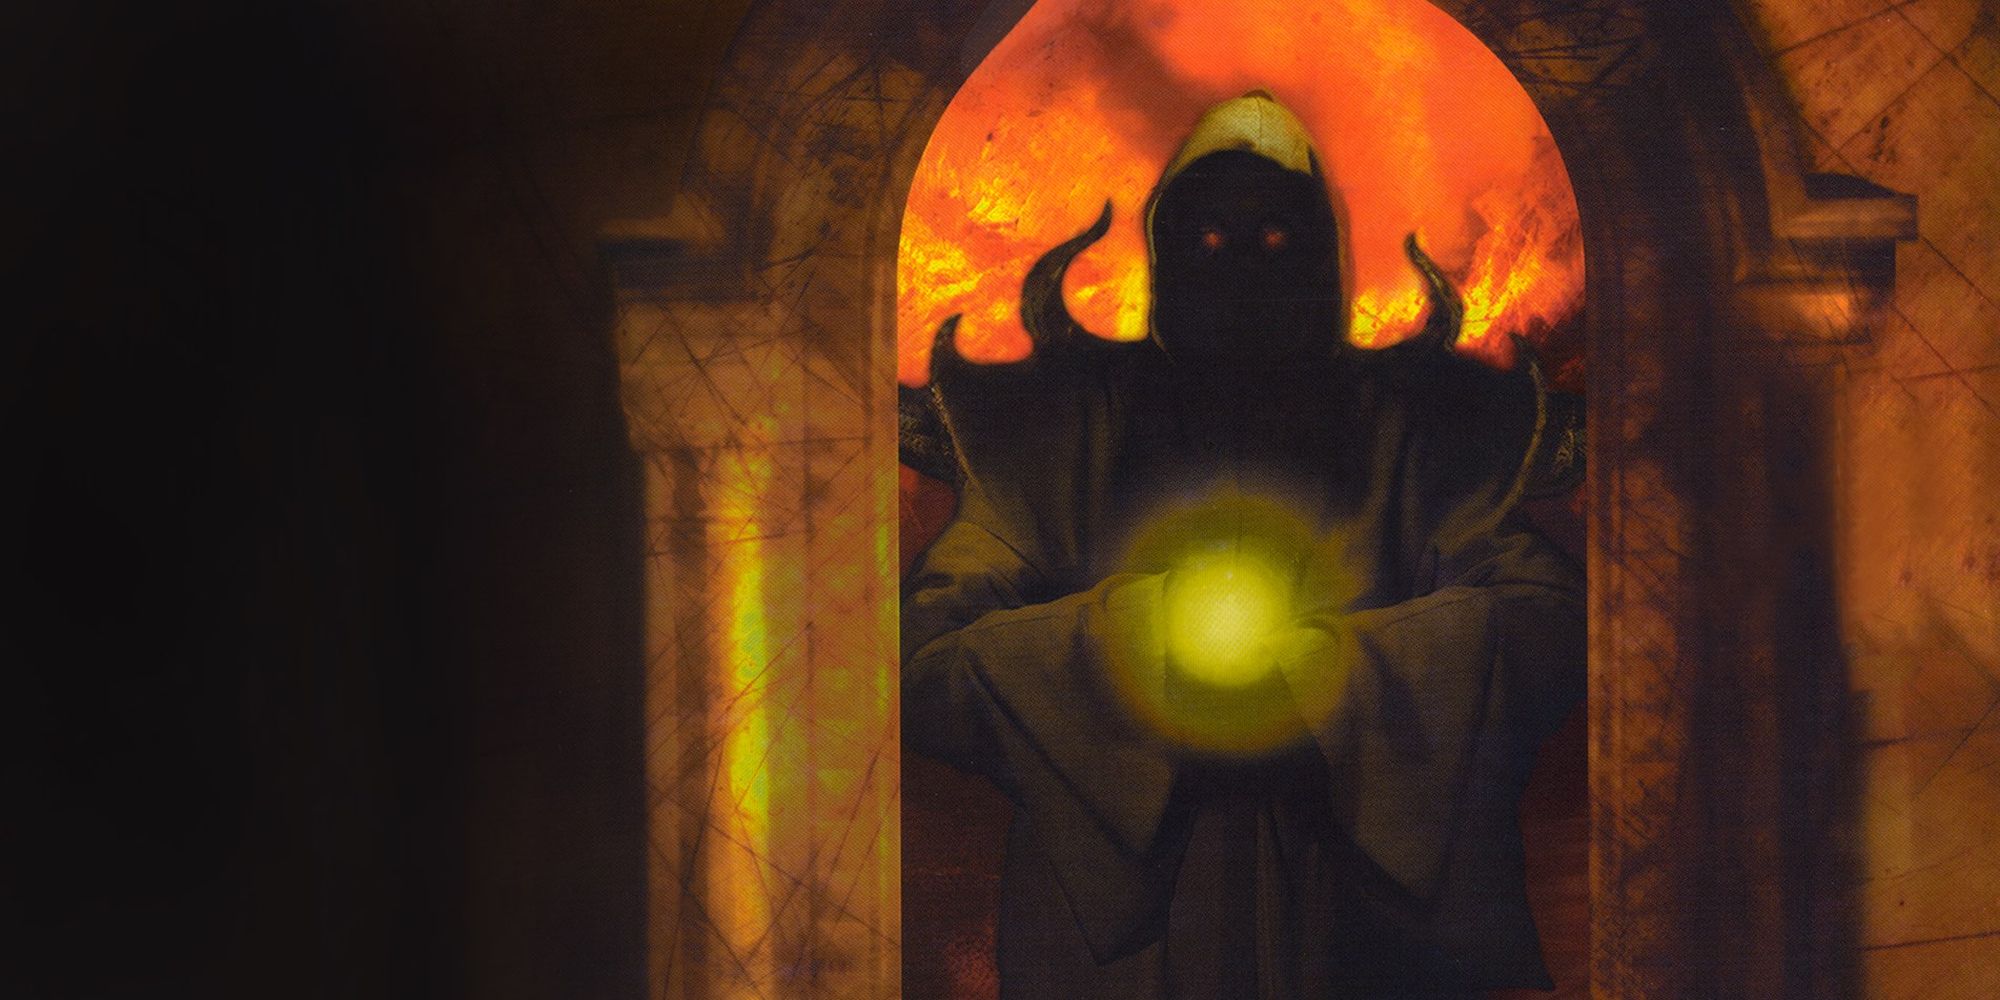 Hexen Beyond Heretic Evil Figure Looming In The Doorway